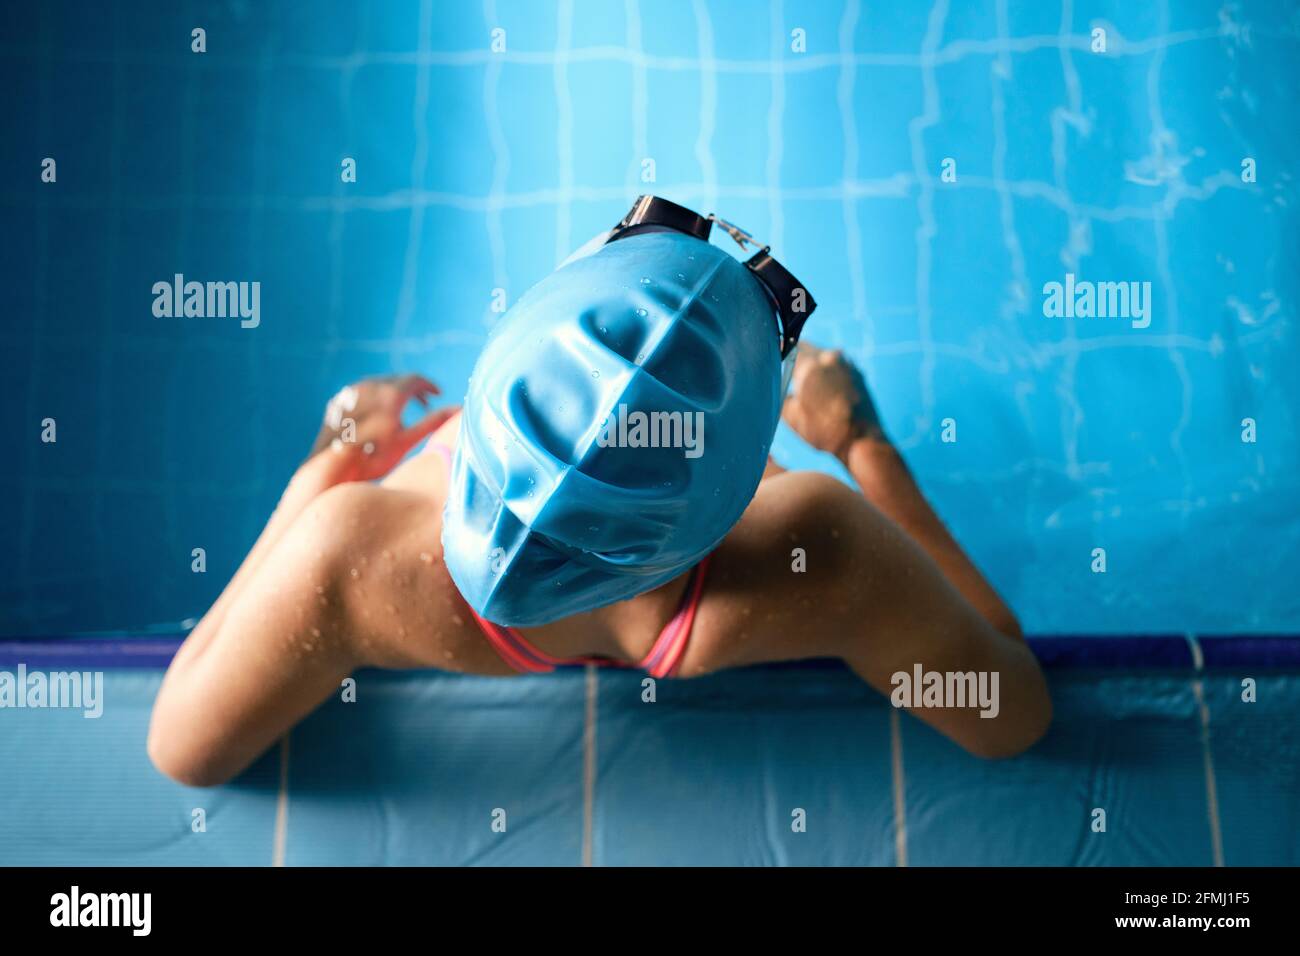 Vista dall'alto di uno sportivo anonimo in cuffia da nuoto appoggiata con le mani a bordo piscina durante la pausa dall'allenamento Foto Stock